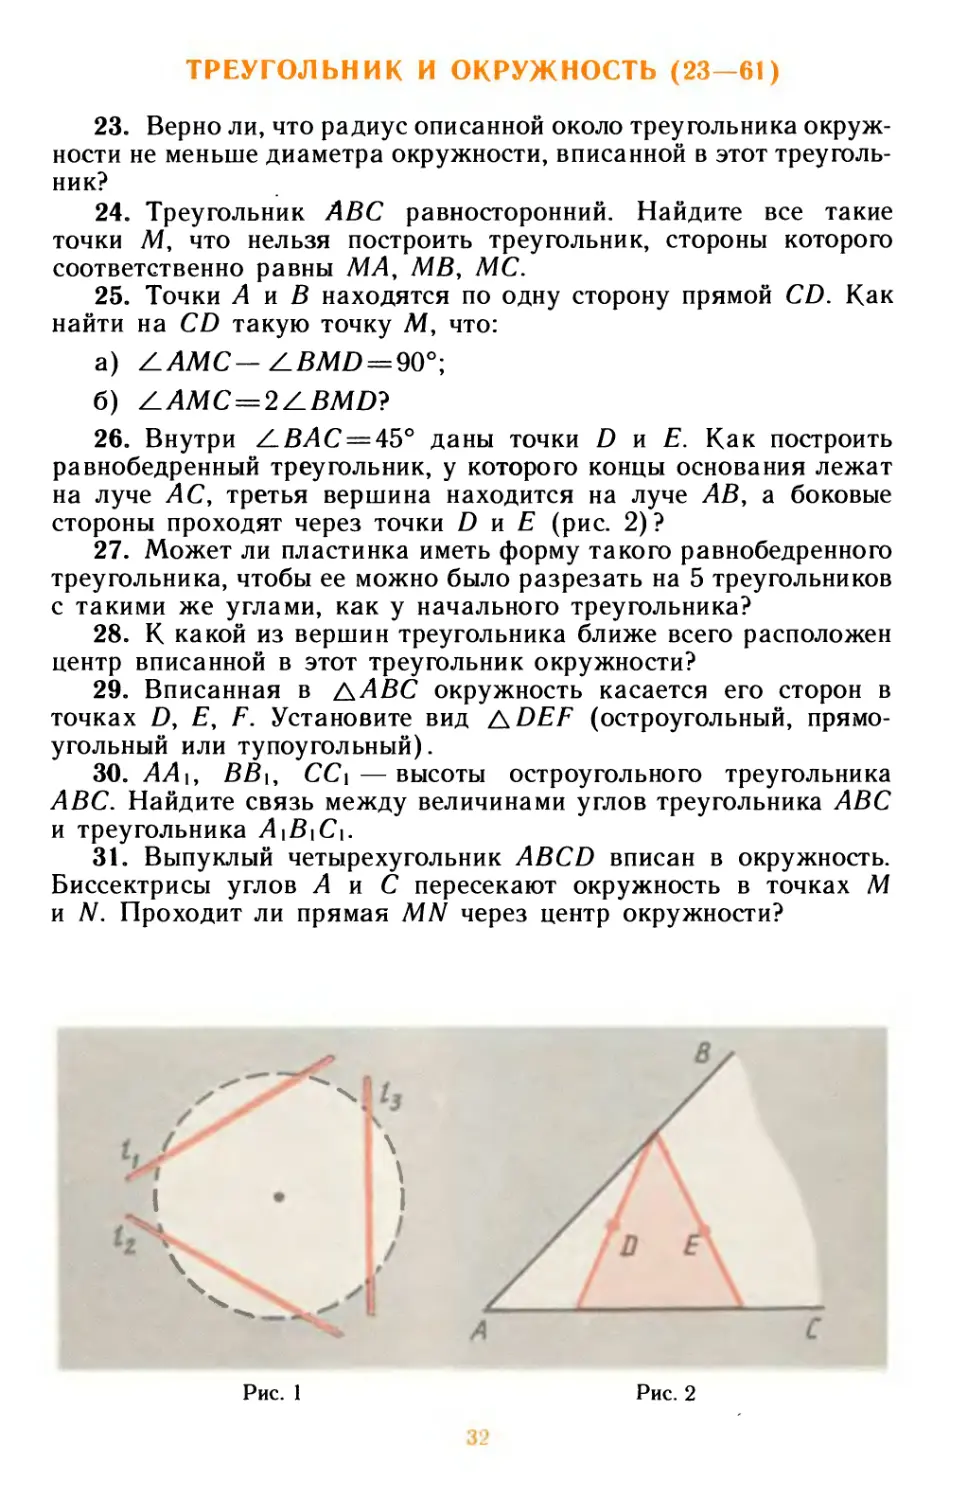 Треугольник и окружность